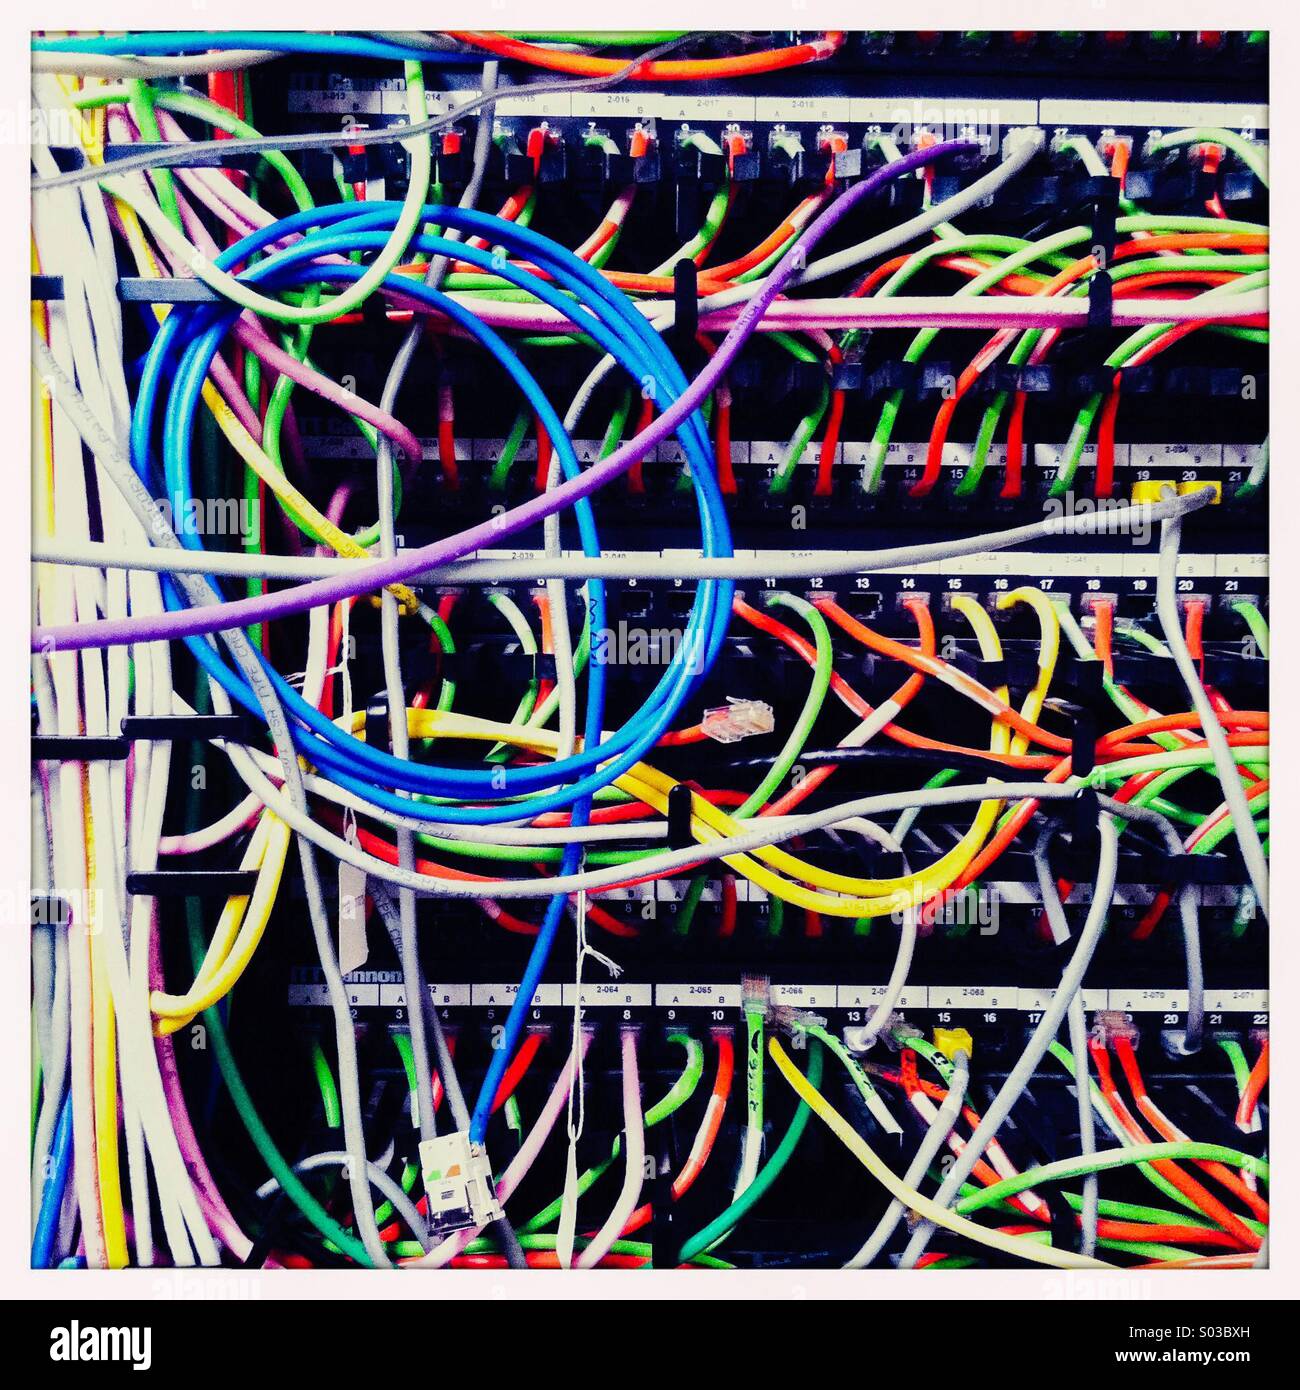 L'interno di una unità di telecomunicazioni con più fili colorati. Foto Stock